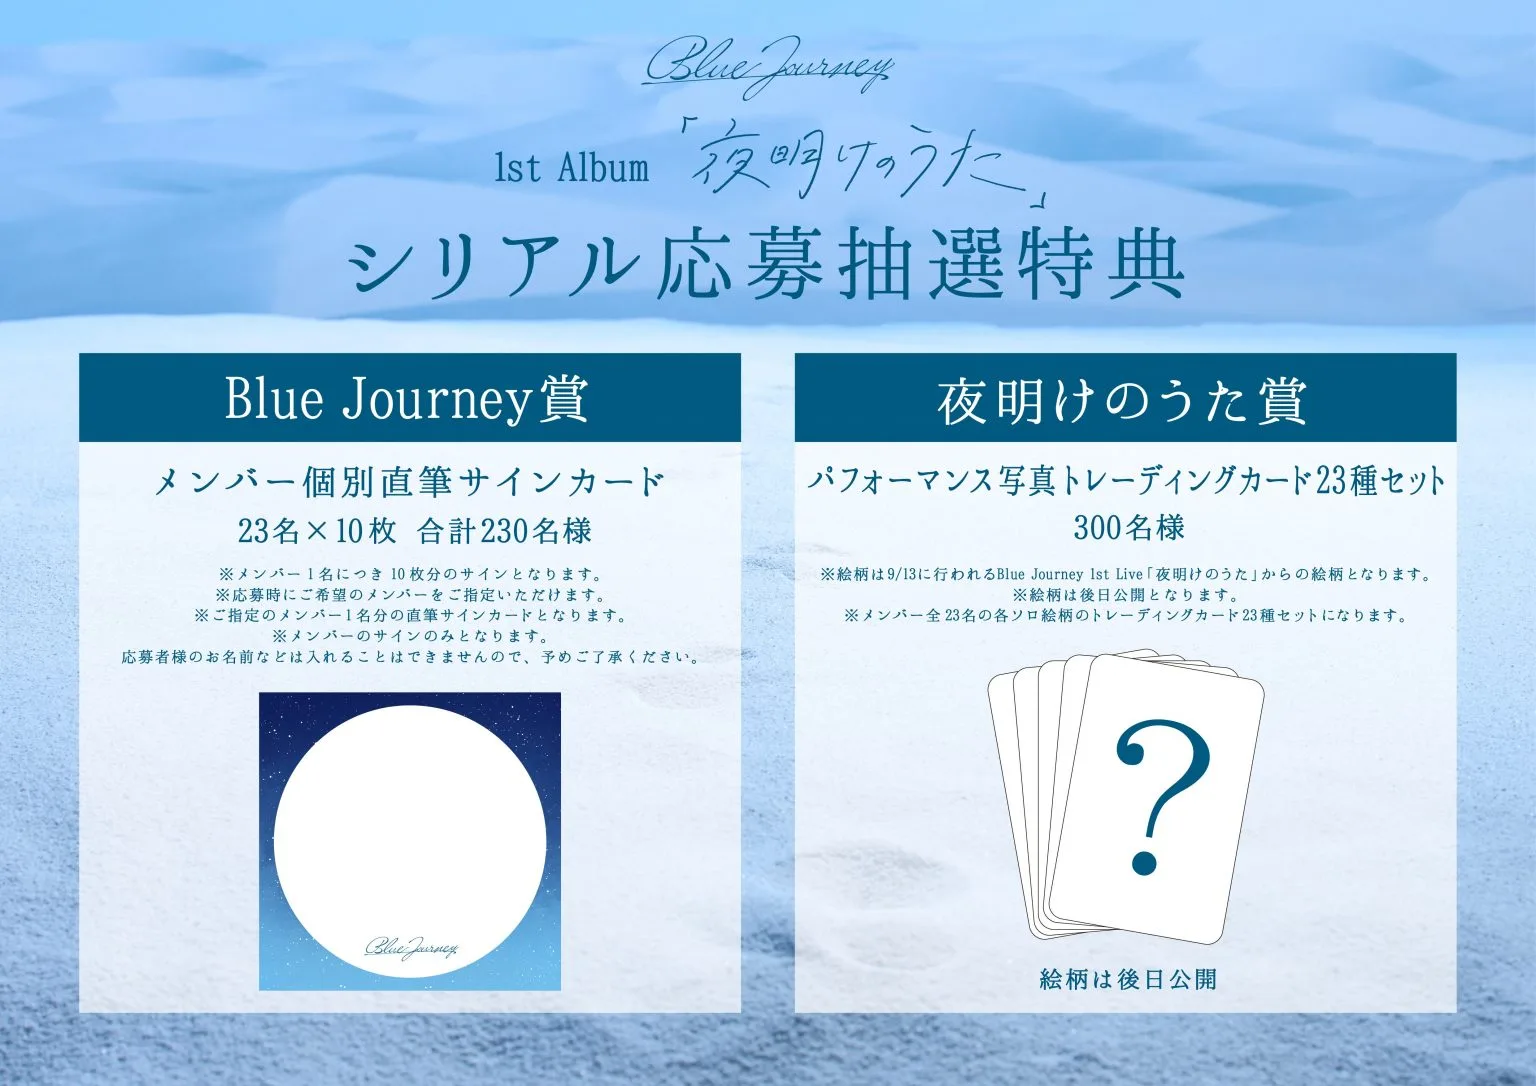 Blue Journey 1st Album「夜明けのうた」のシリアルコード特典とは